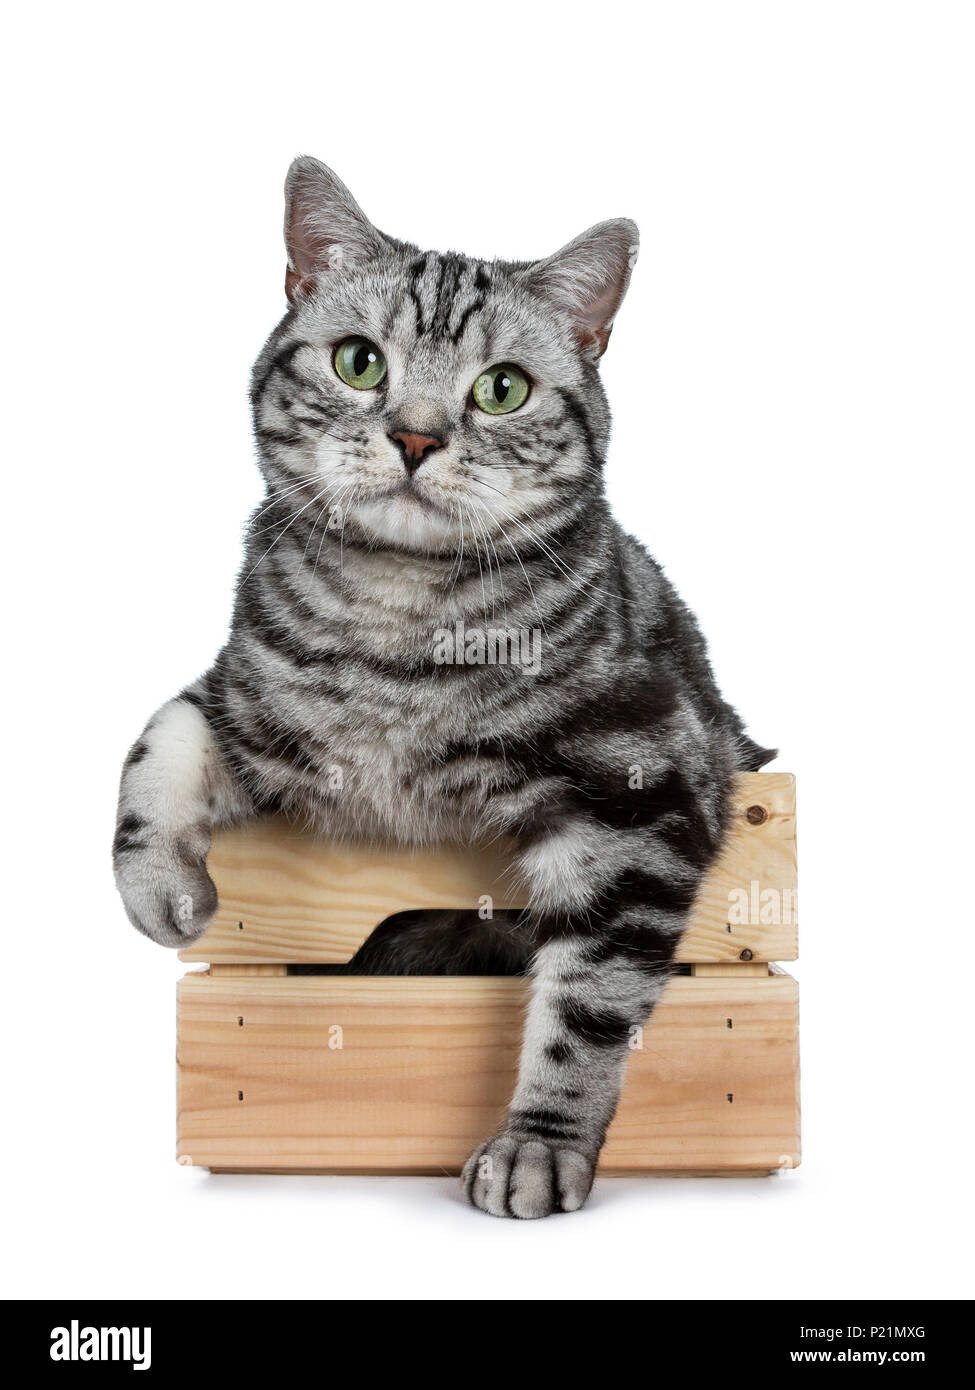 Beau black silver tabby cat British Shorthair assis assis dans un coffret en bois avec des pattes à l'extérieur isolé sur fond blanc et looking at camera Banque D'Images